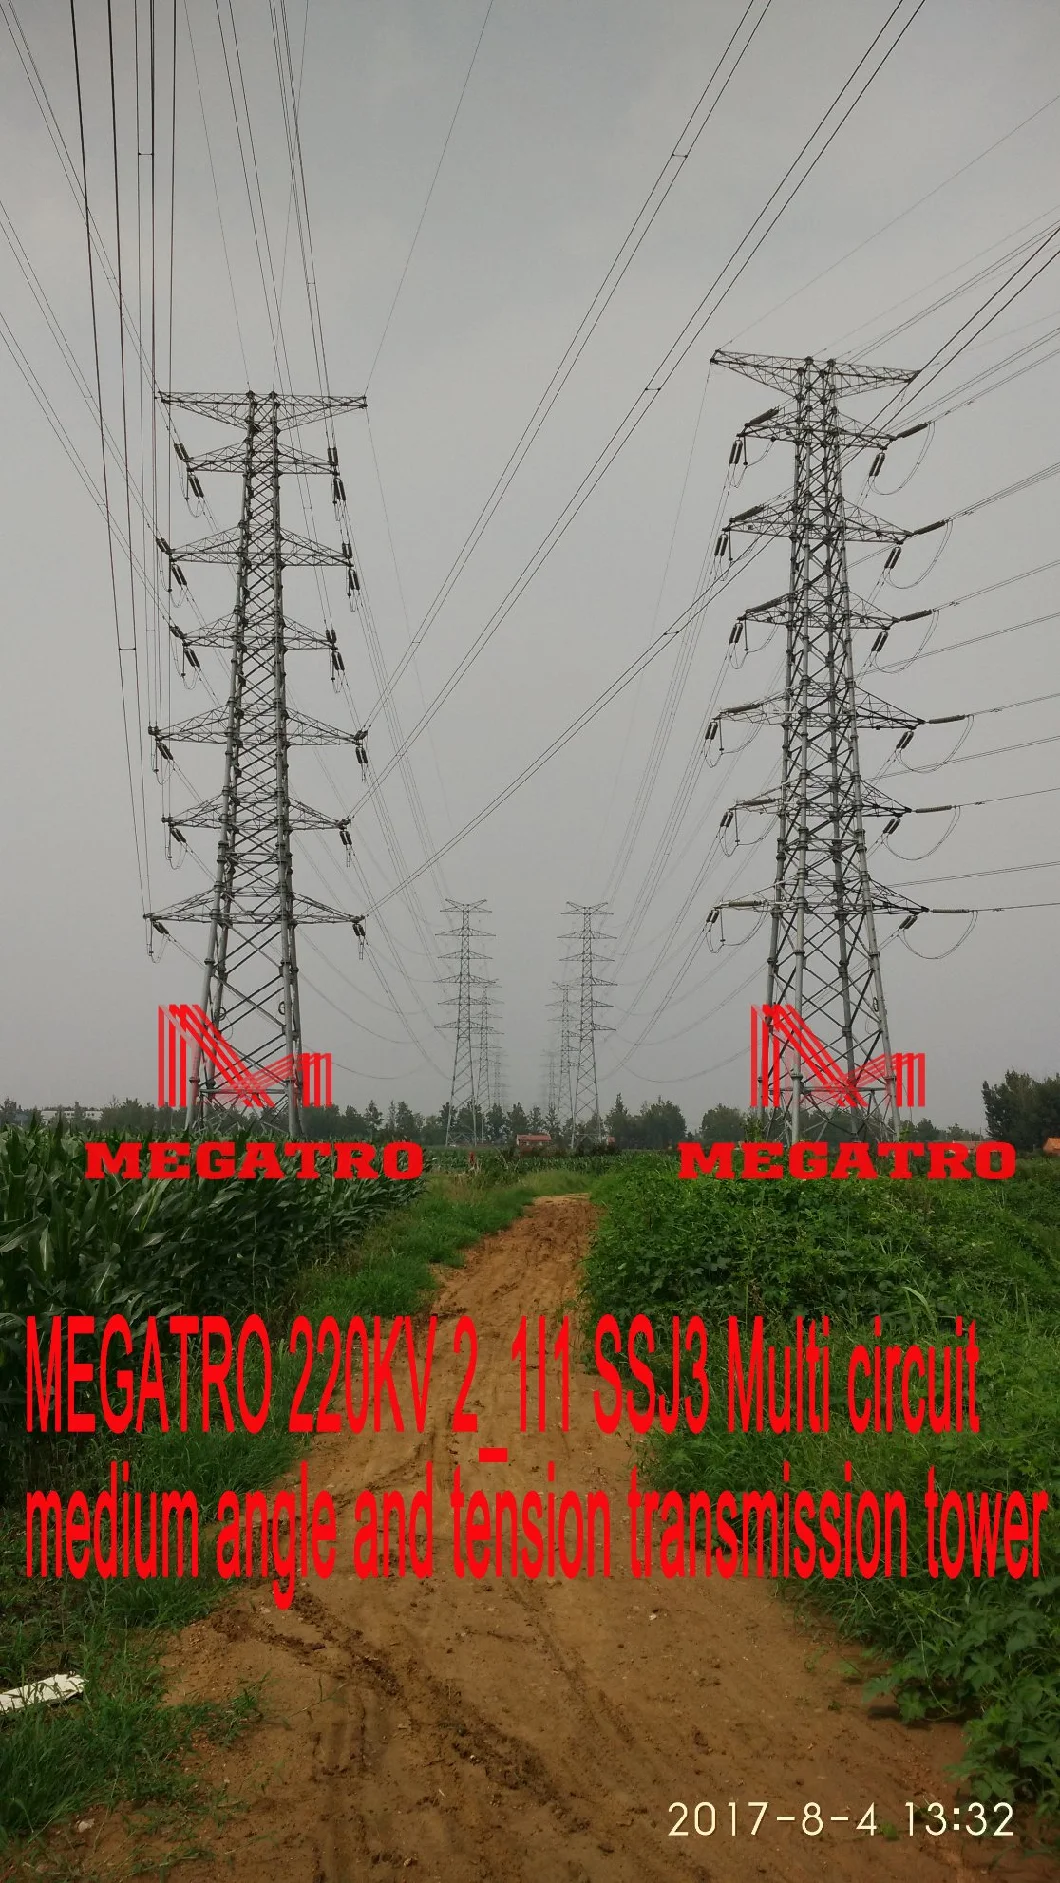 Megatro 220kv Ssj3 Multi Circuit Medium Angle and Tension Transmission Tower